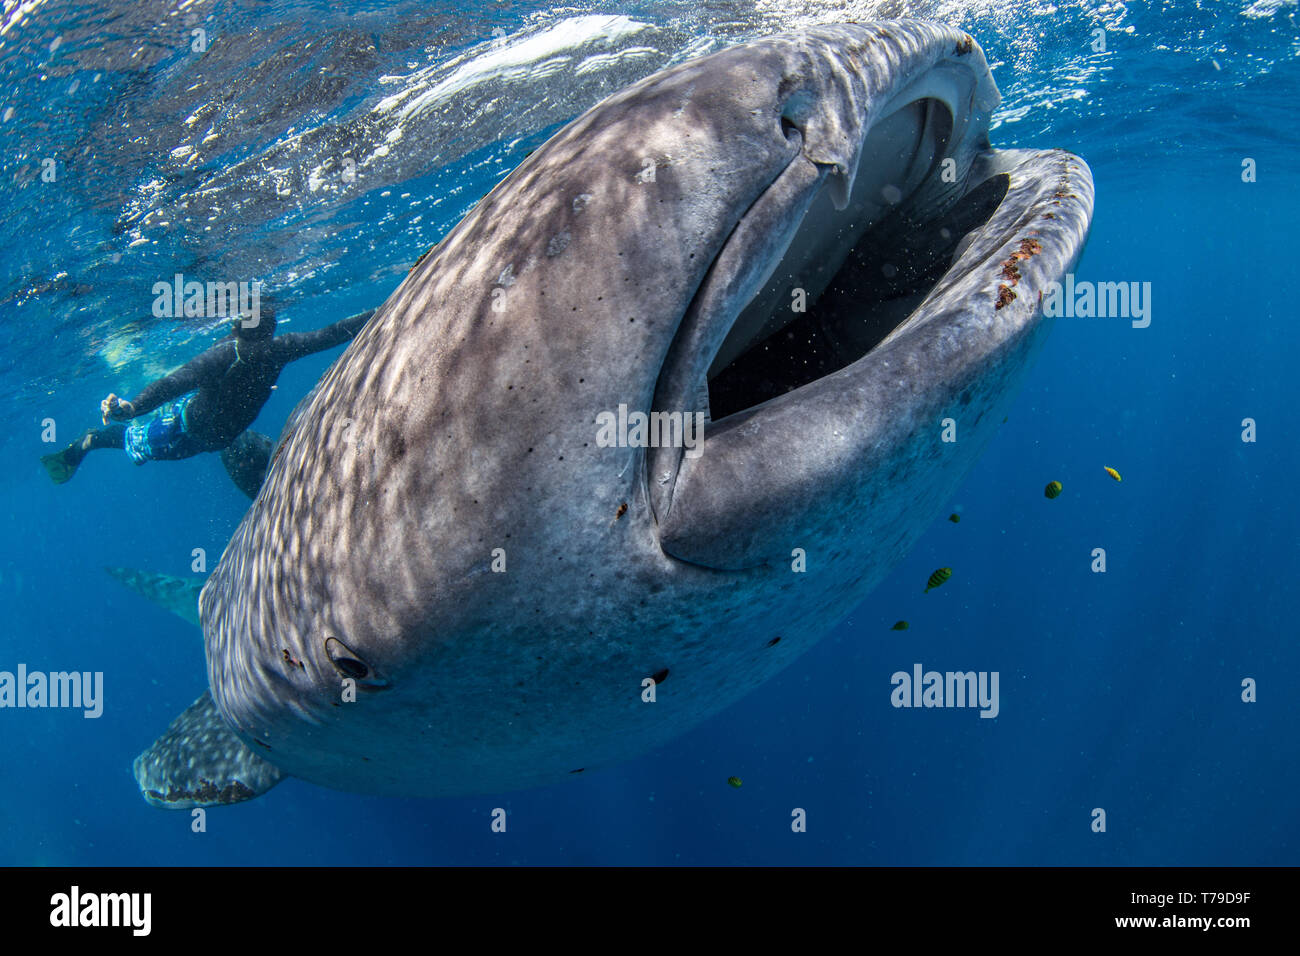 Tour guide plongée avec un jeune requin baleine Rhincodon typus ( ) se nourrissant de la surface dans le compartiment de Honda, Puerto Princesa, Palawan, aux Philippines. Banque D'Images